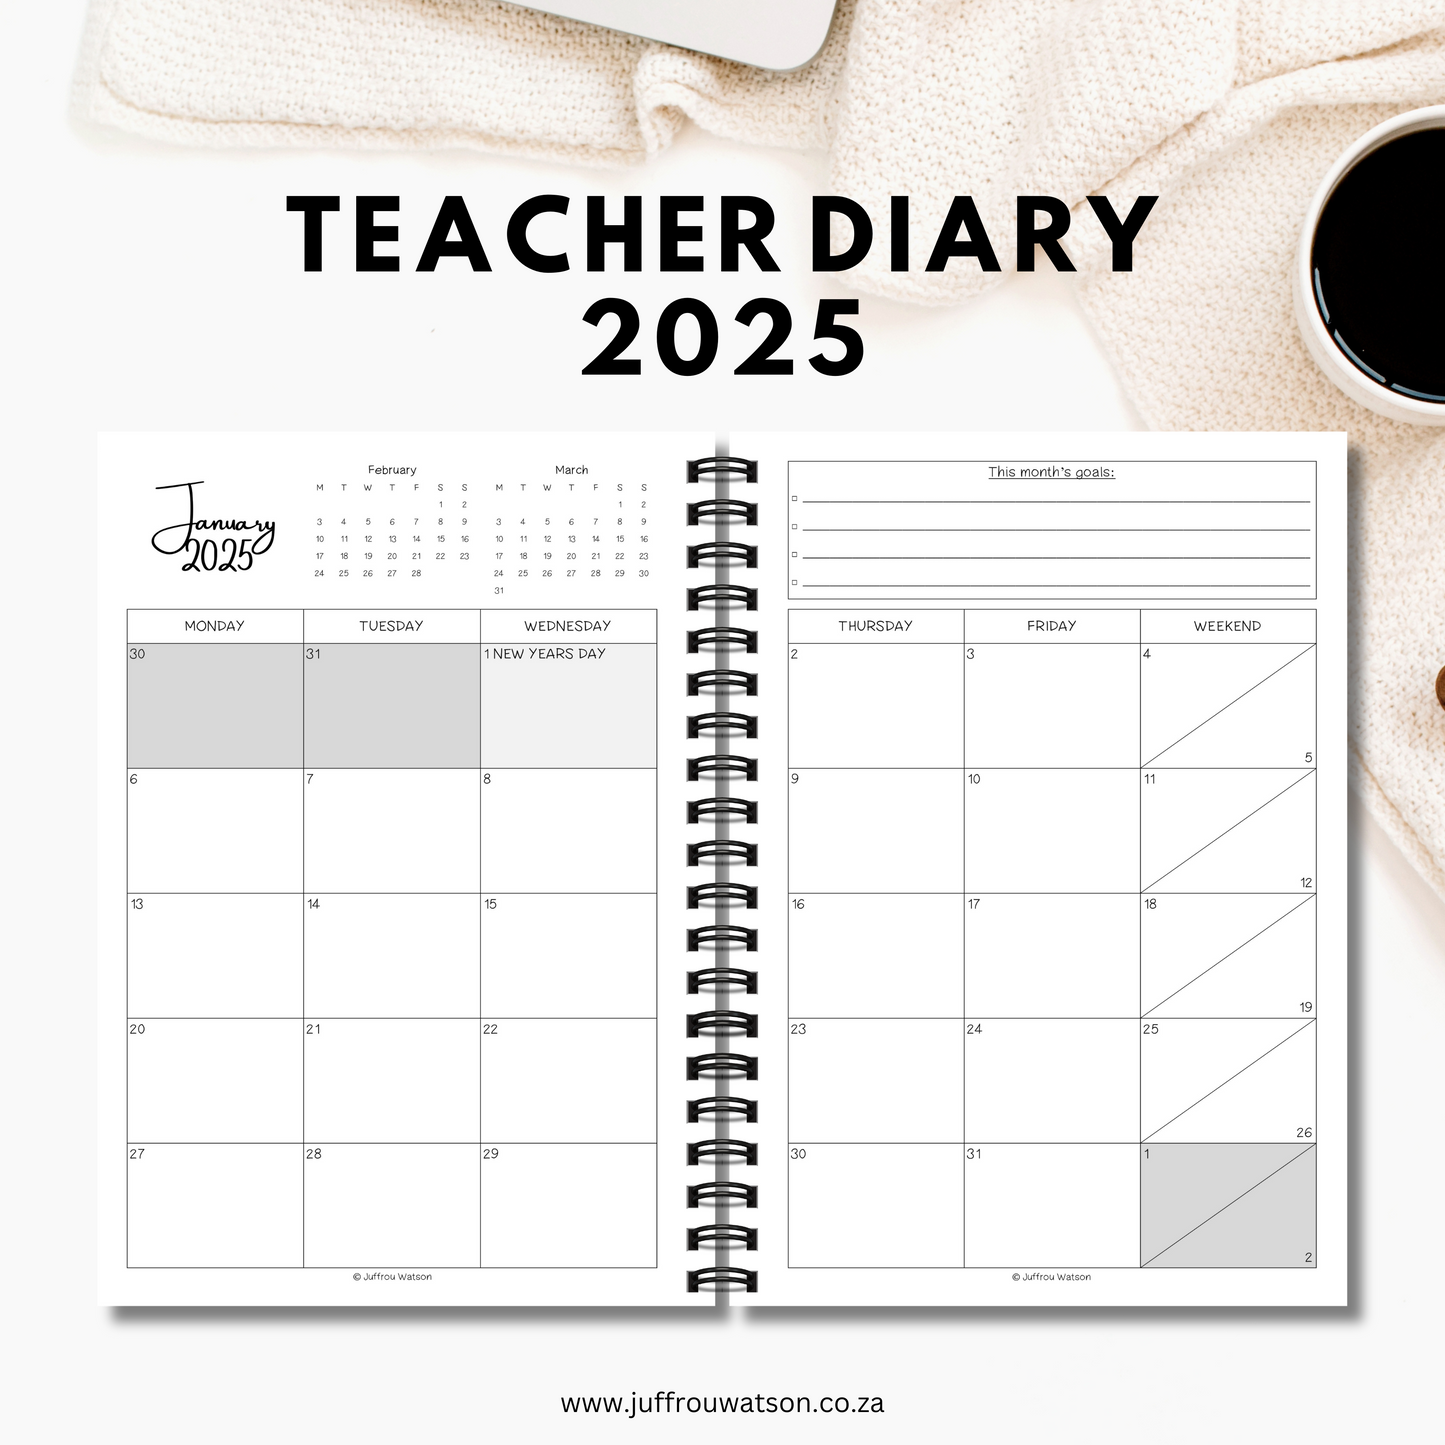 2025 Teacher Diary - Autumn